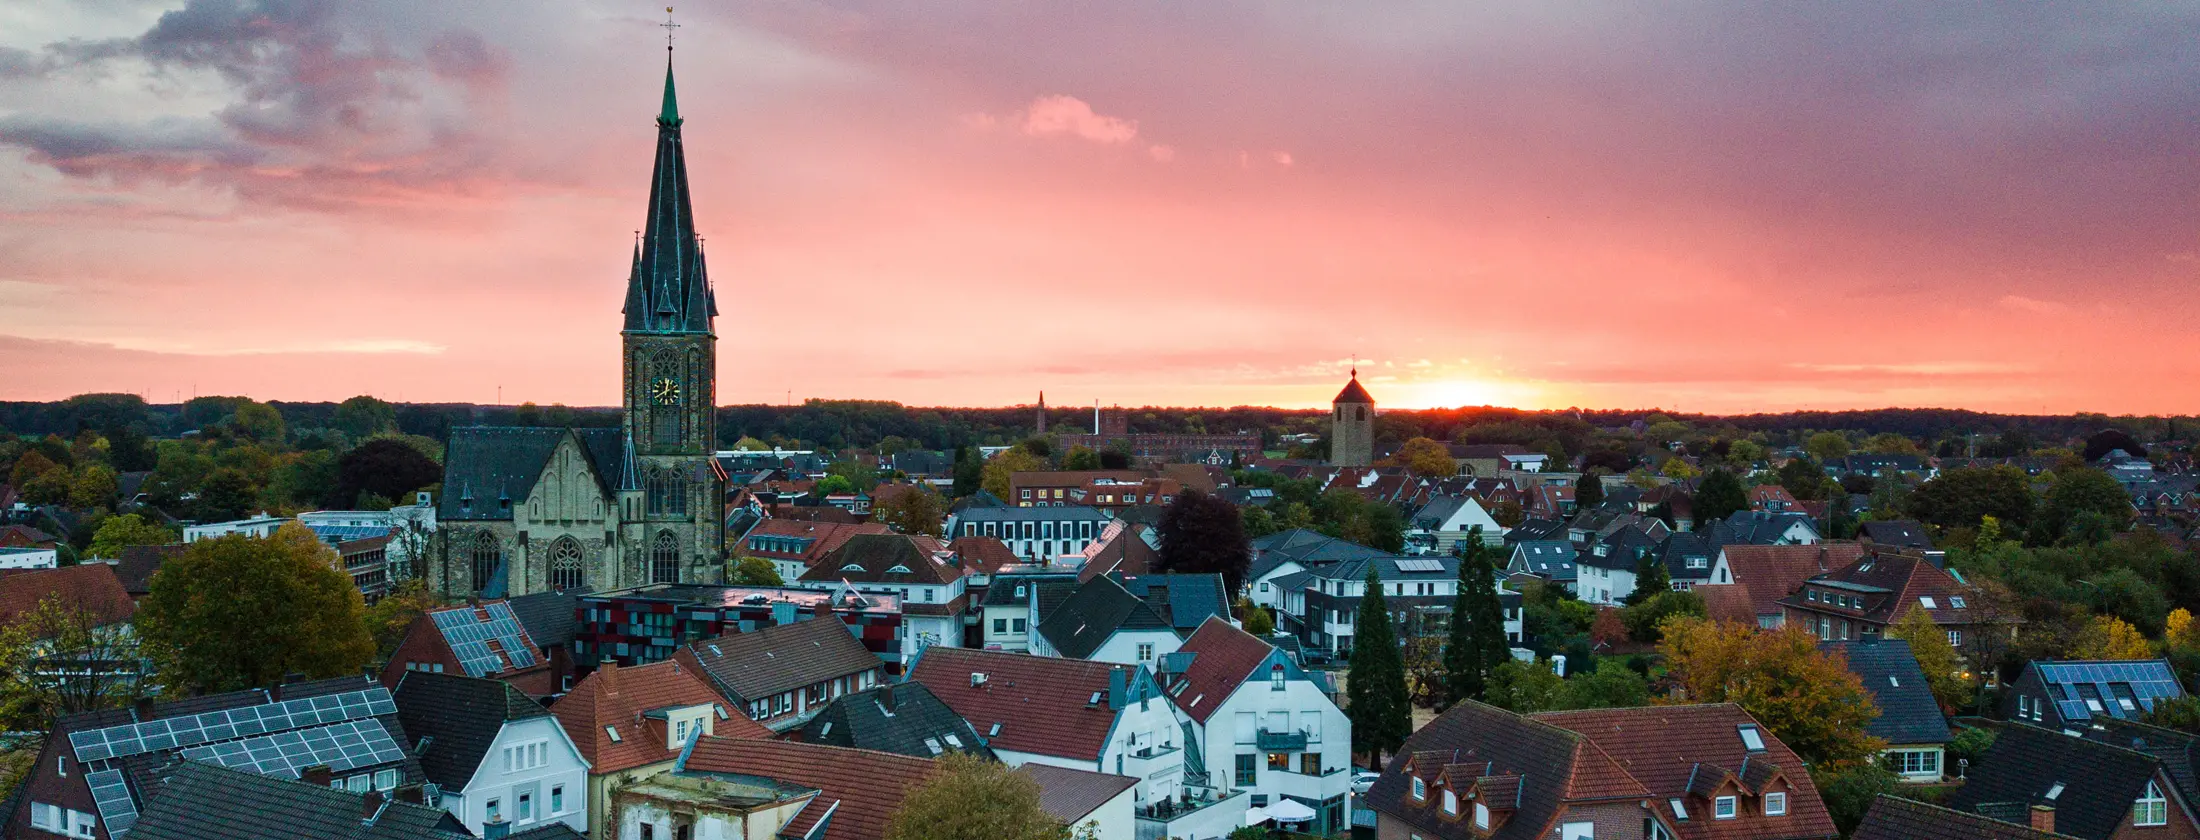 Panorama Bild von Gescher, Blick nach Osten zur aufgehenden Sonne. Links im Bild Kirche St. Pankratius, in der Bildmitte der Kirchturm der ehemaligen Kirche St. Mariä Himmelfahrt.